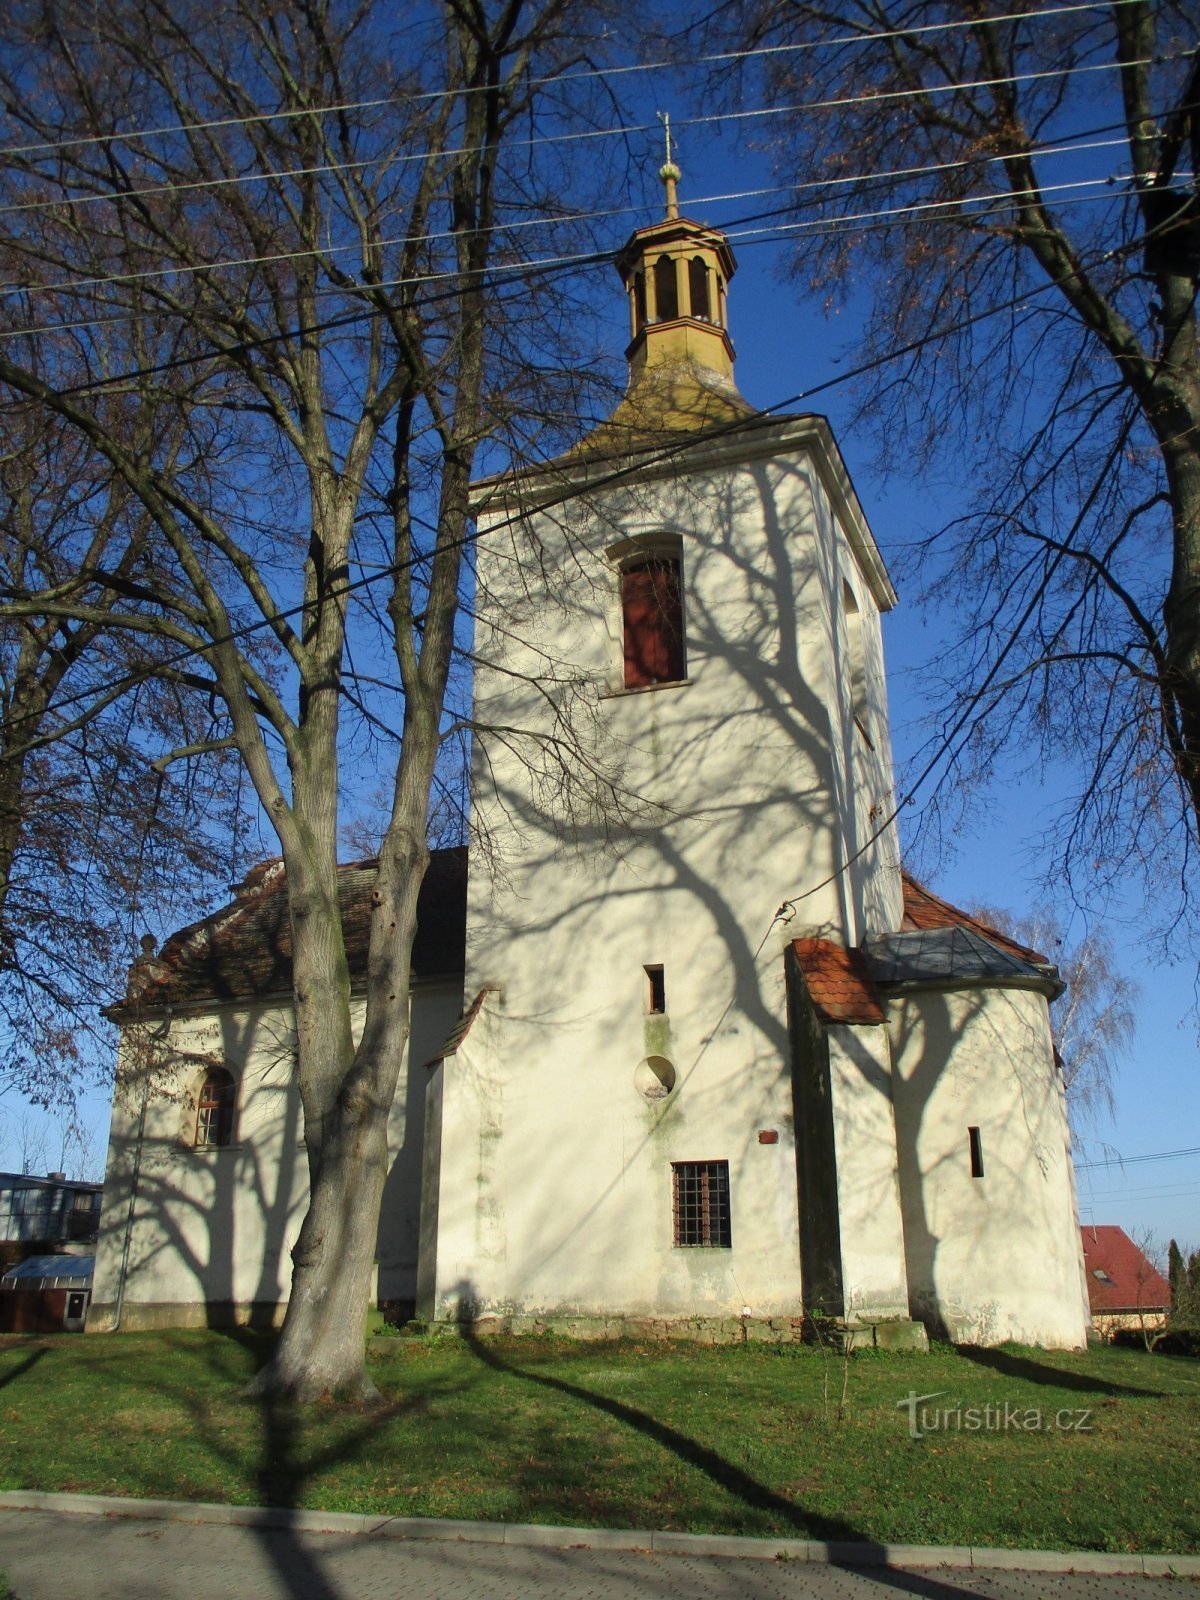 Pyhän kirkko Andreas (pyhimys)